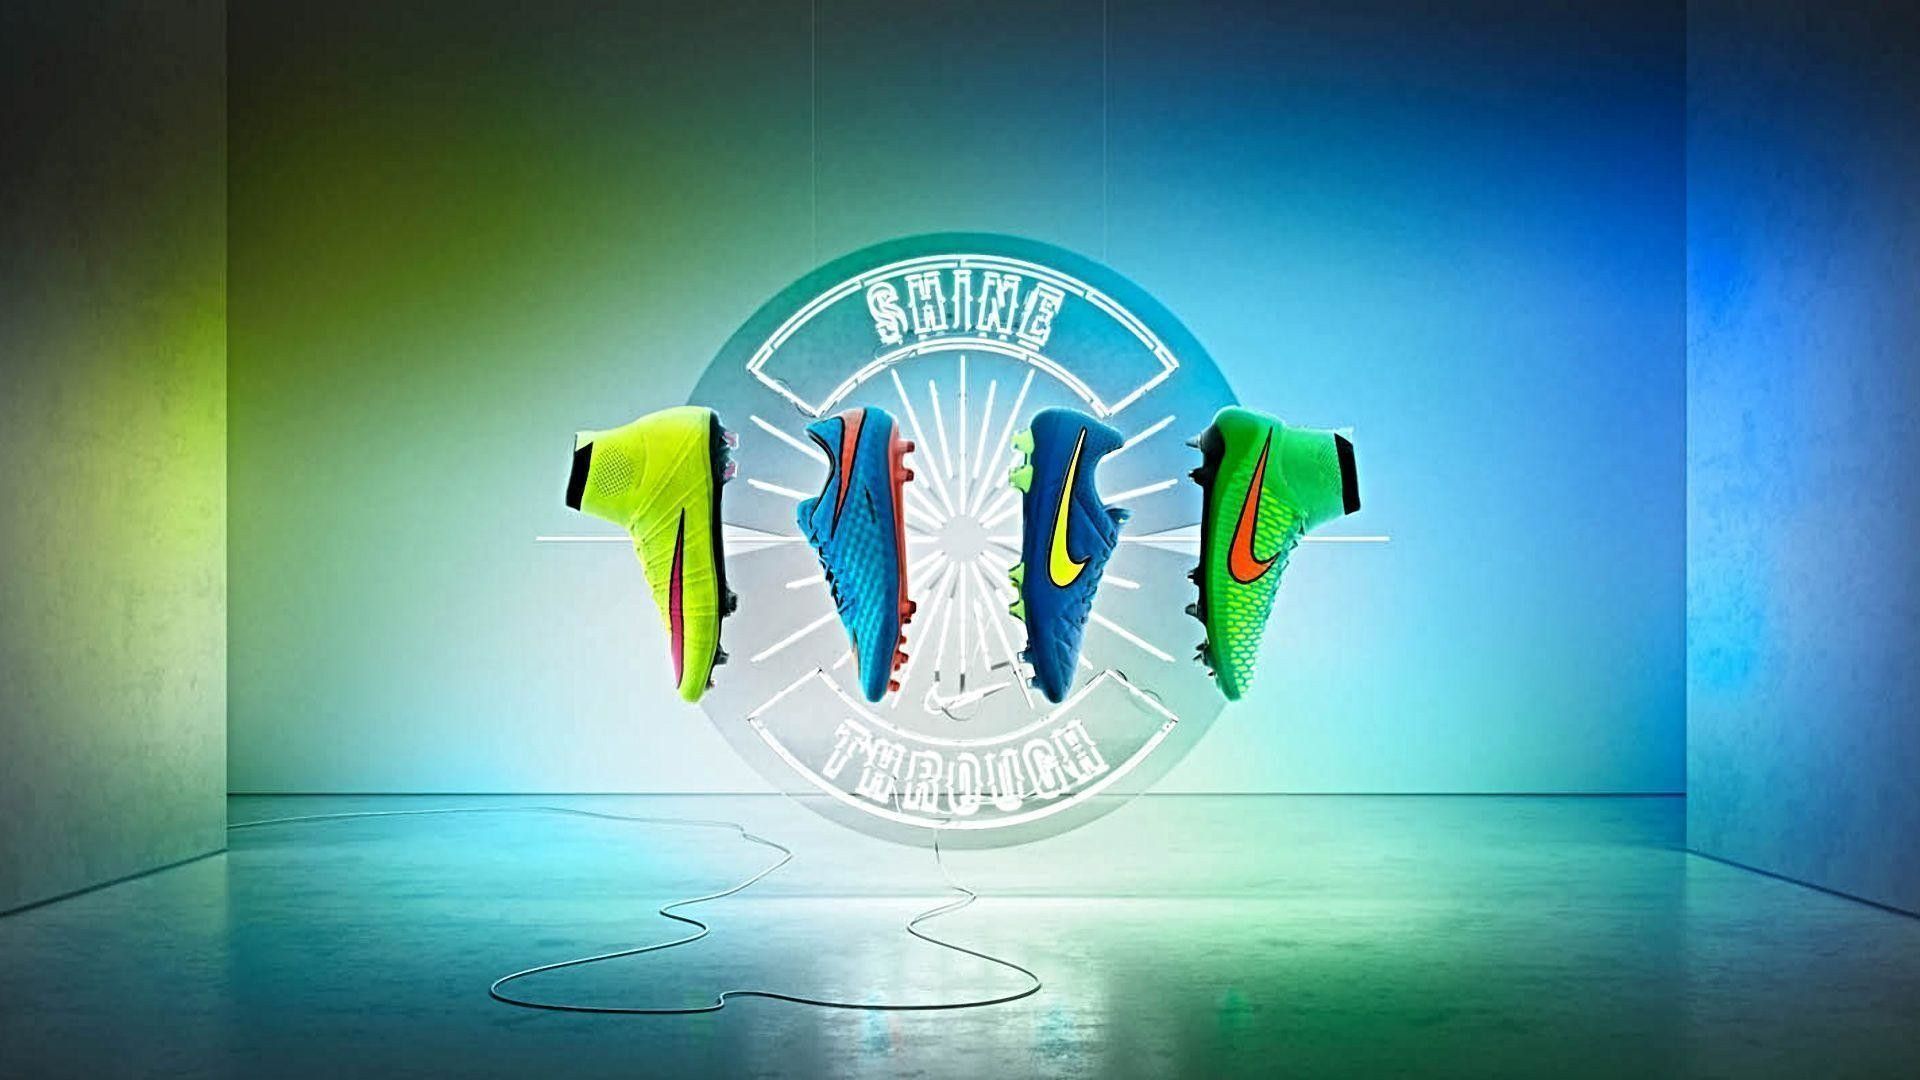 Fondos de fútbol Nike